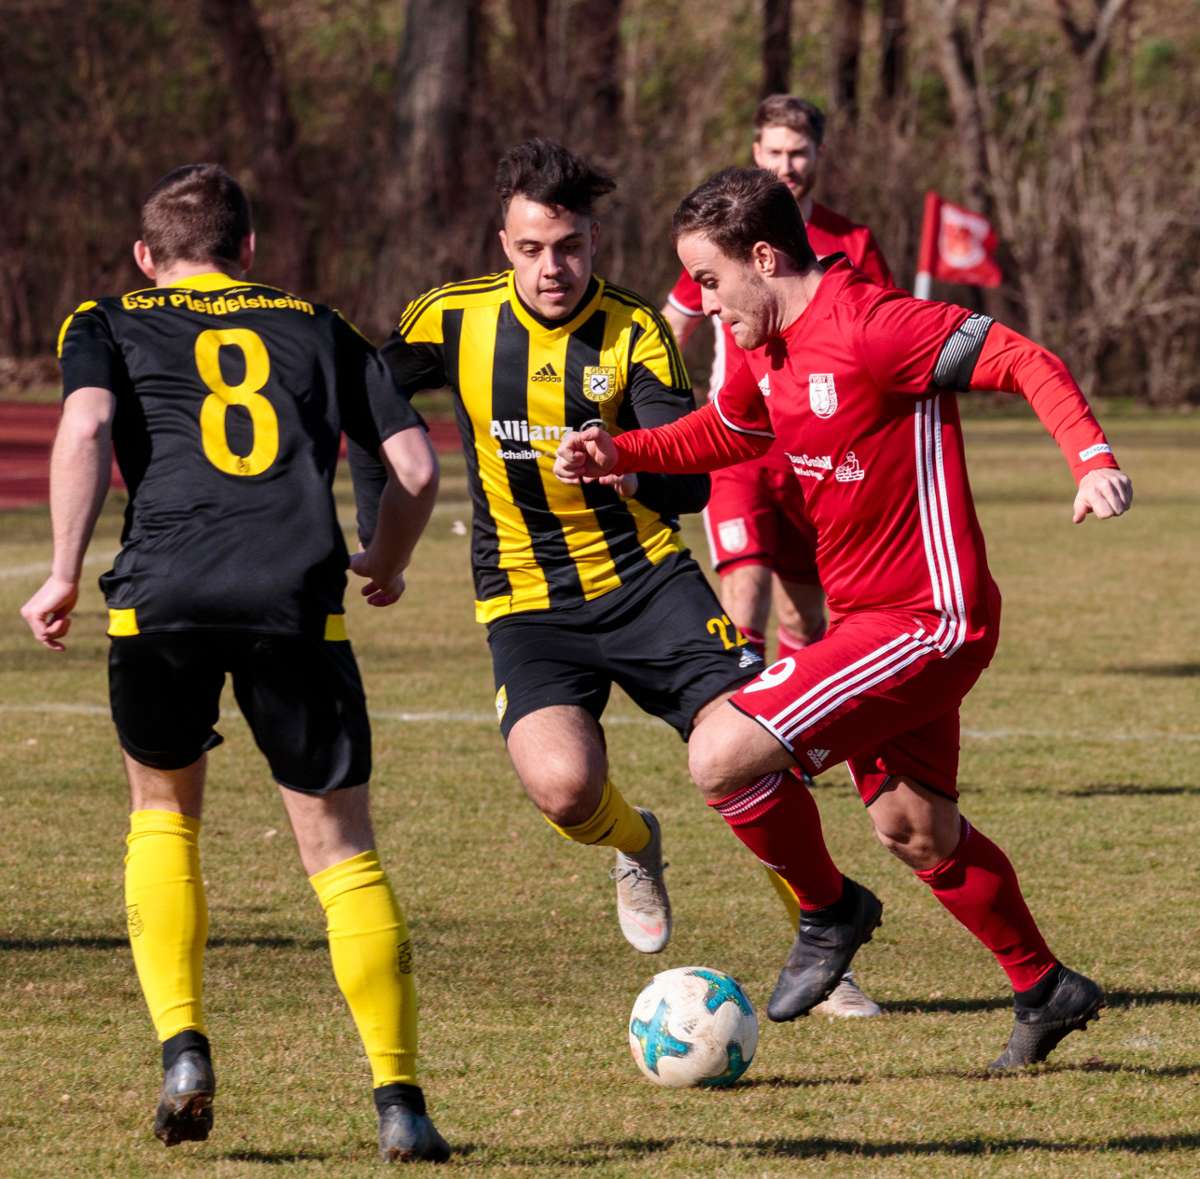 Serie Fußball lokal: Der GSV Pleidelsheim will wieder nach oben